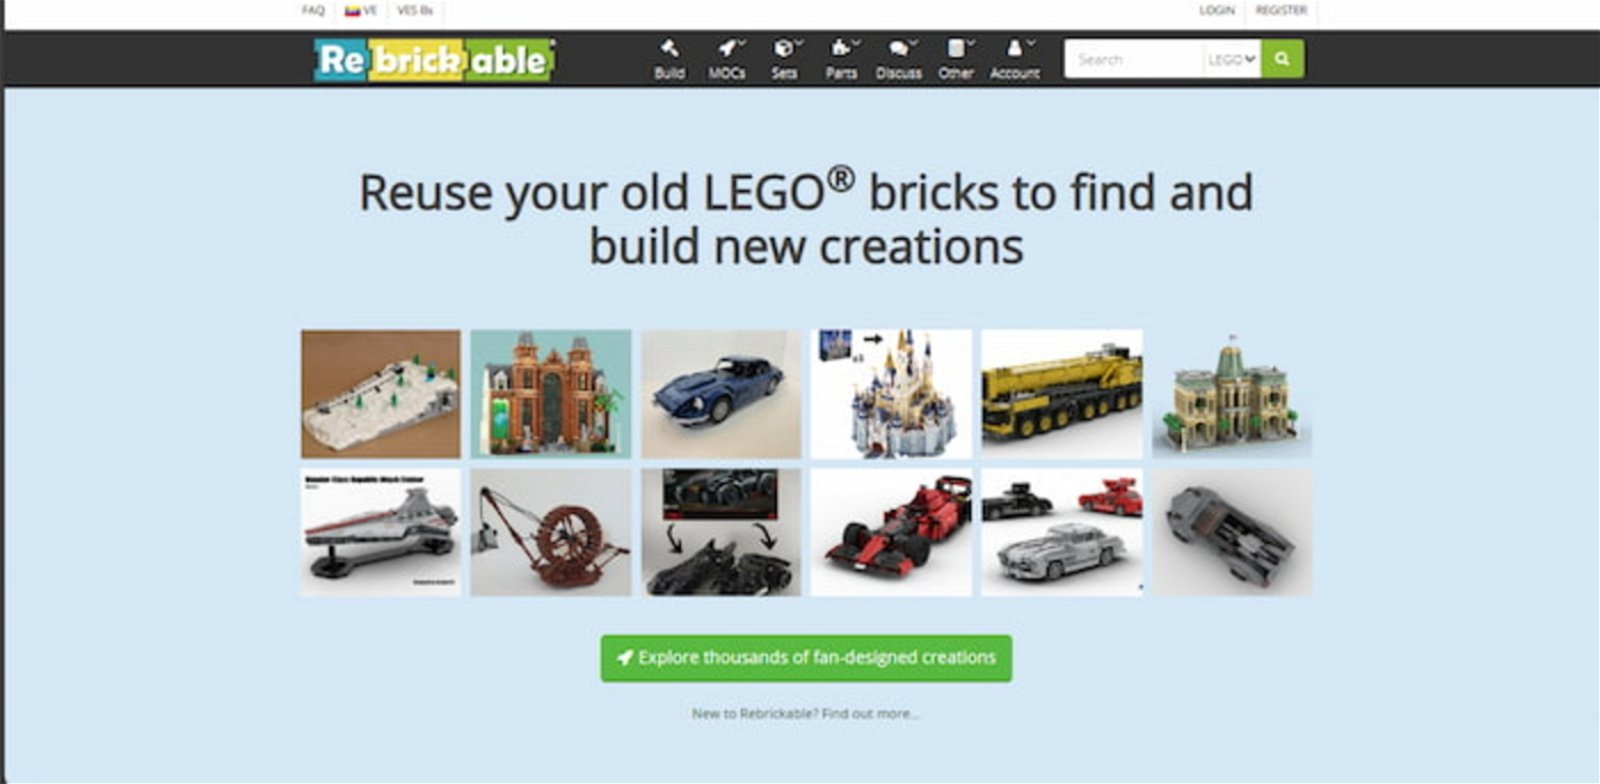 Esta es una de las webs más importantes para descargar instructivos de LEGO, tanto comercializados como los creados por la comunidad de forma personalizada